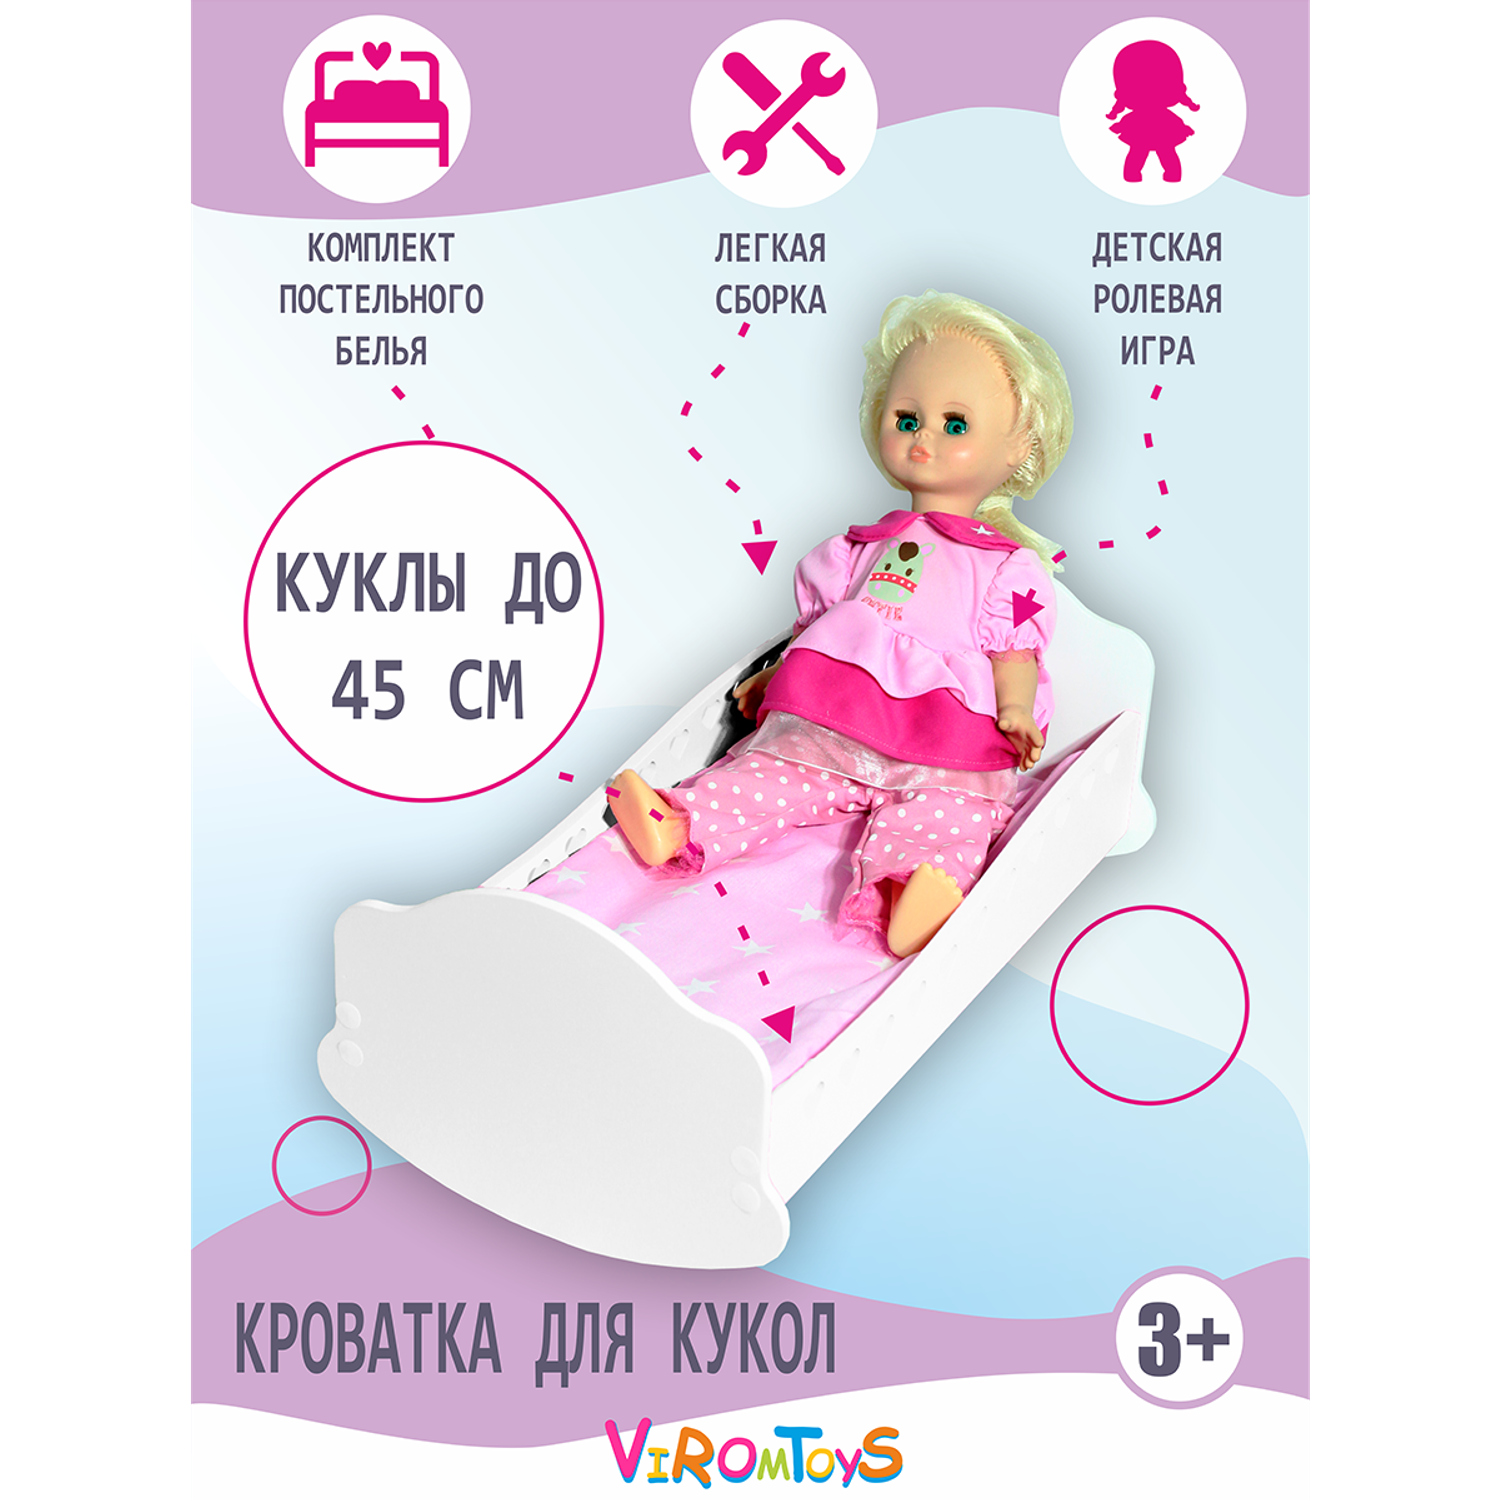 Кроватка для кукол до 45 см. ViromToys с комплектом постельного белья Кд0007 - фото 1